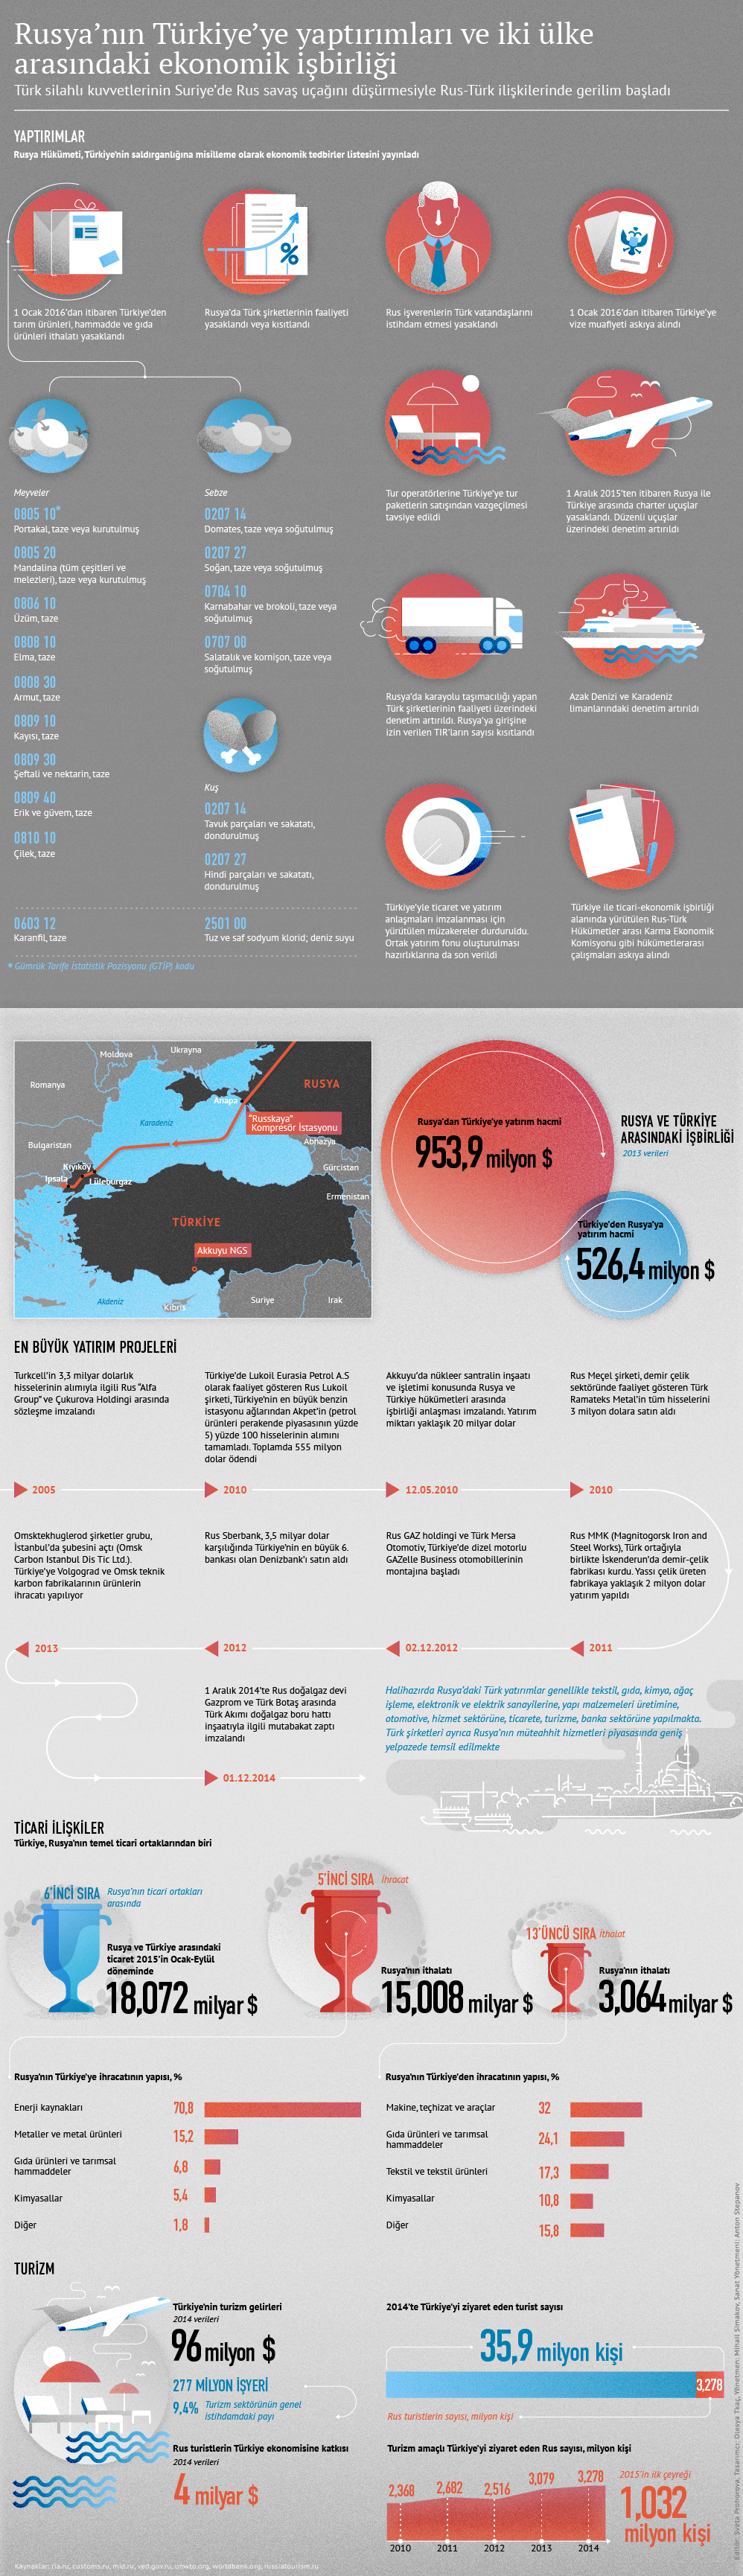 Rusya’nın Türkiye’ye yaptırımları ve iki ülke arasındaki ekonomik işbirliği - Sputnik Türkiye